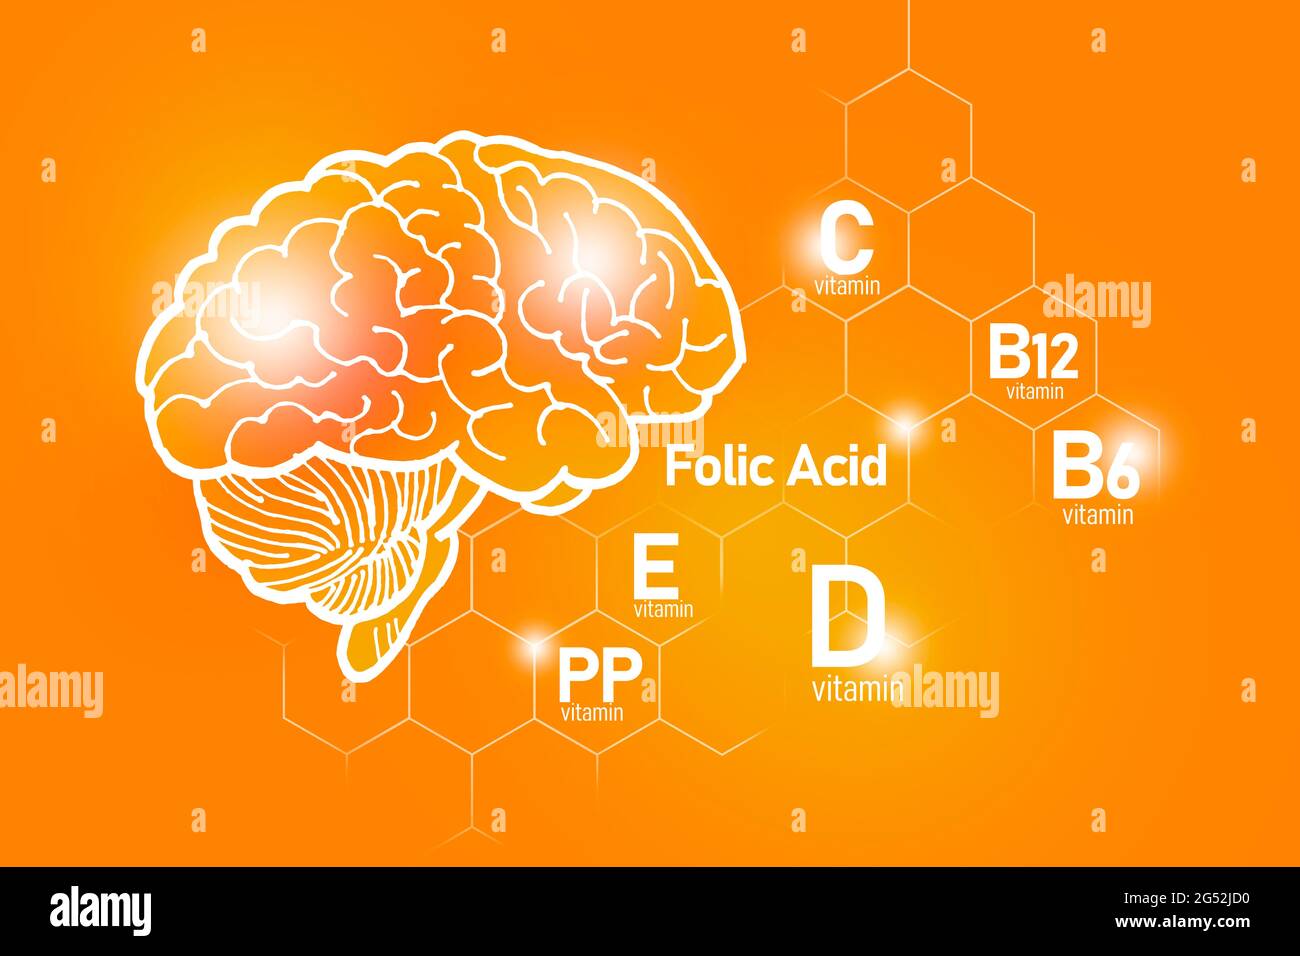 Essentielle Nährstoffe für die Gesundheit des Gehirns, einschließlich Vitamin C, Vitamin B, Folsäure, Vitamin PP. Design-Set der wichtigsten menschlichen Organe mit Vitaminen Stockfoto